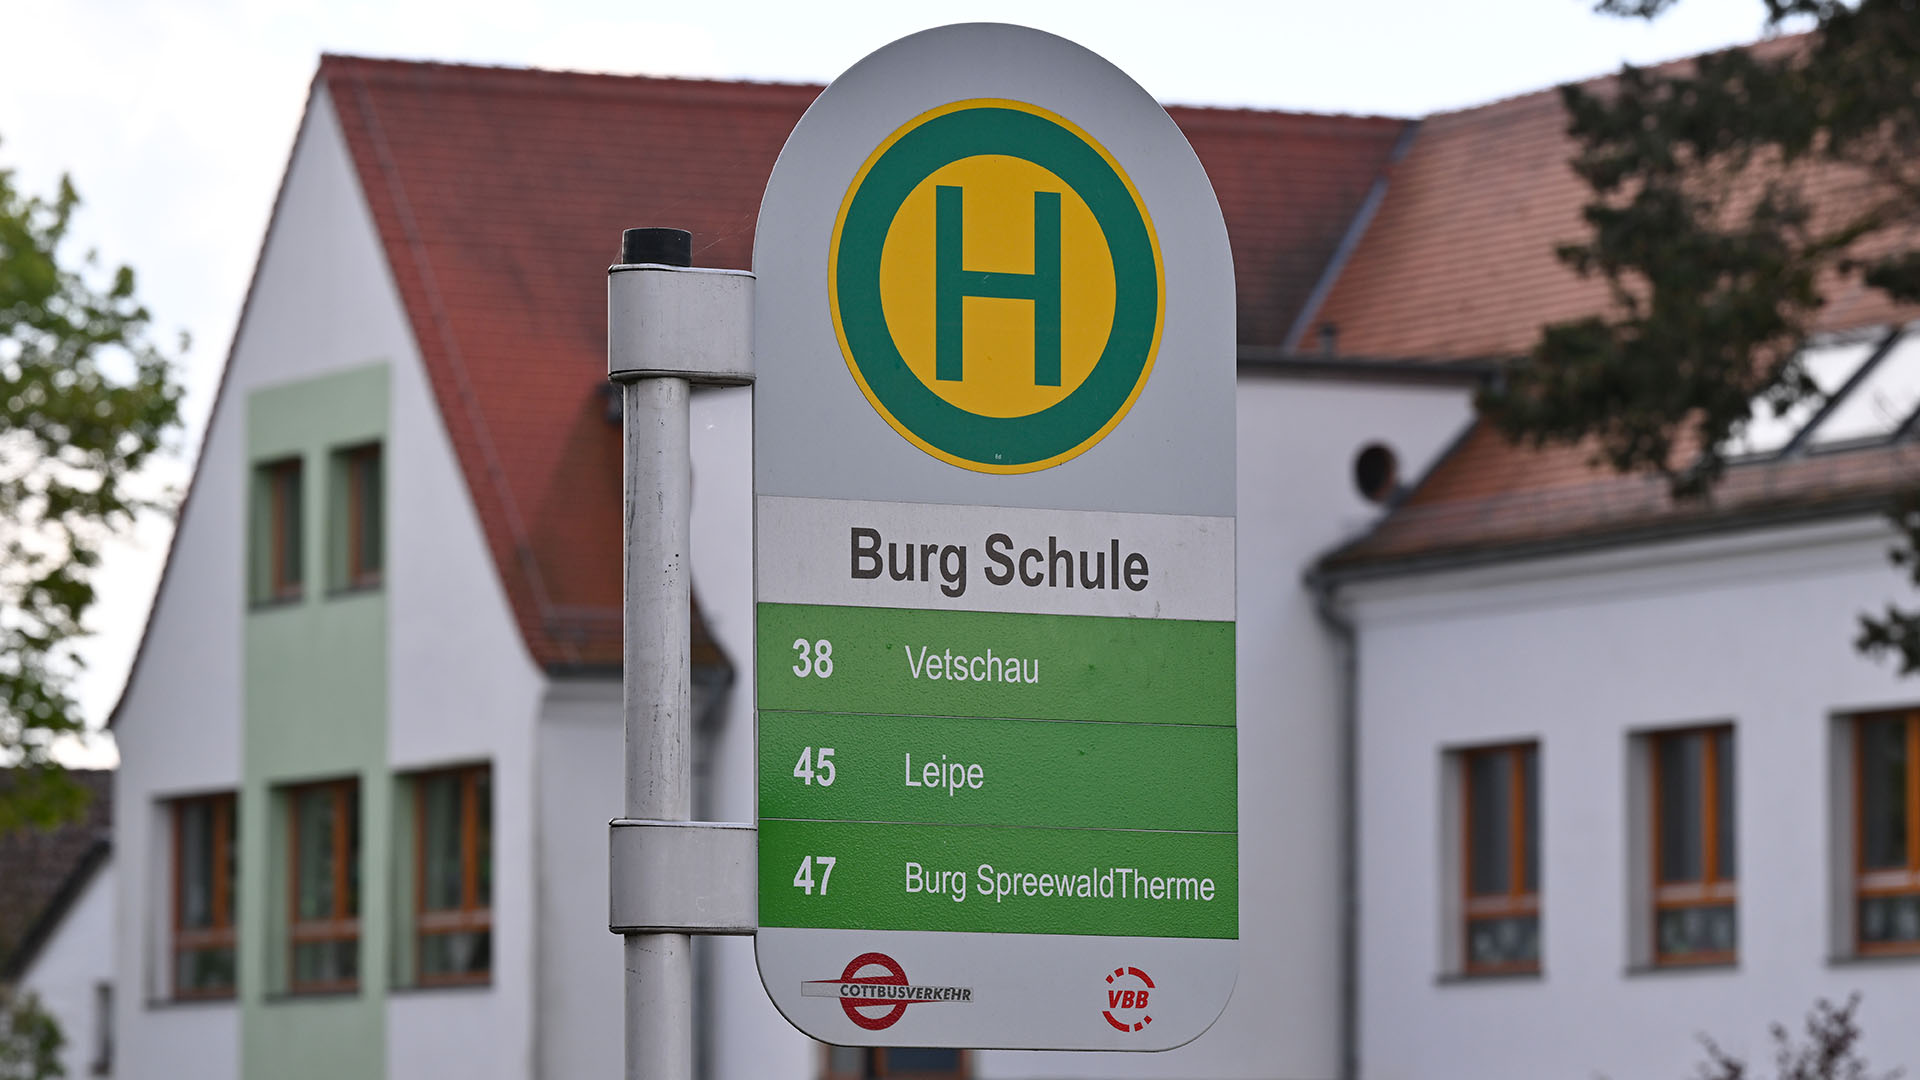 Archivbild: Die Bus-Haltestelle «Burg Schule» steht vor einer Grund- und Oberschule im Spreewaldort Burg. (Quelle: dpa/Pleul)